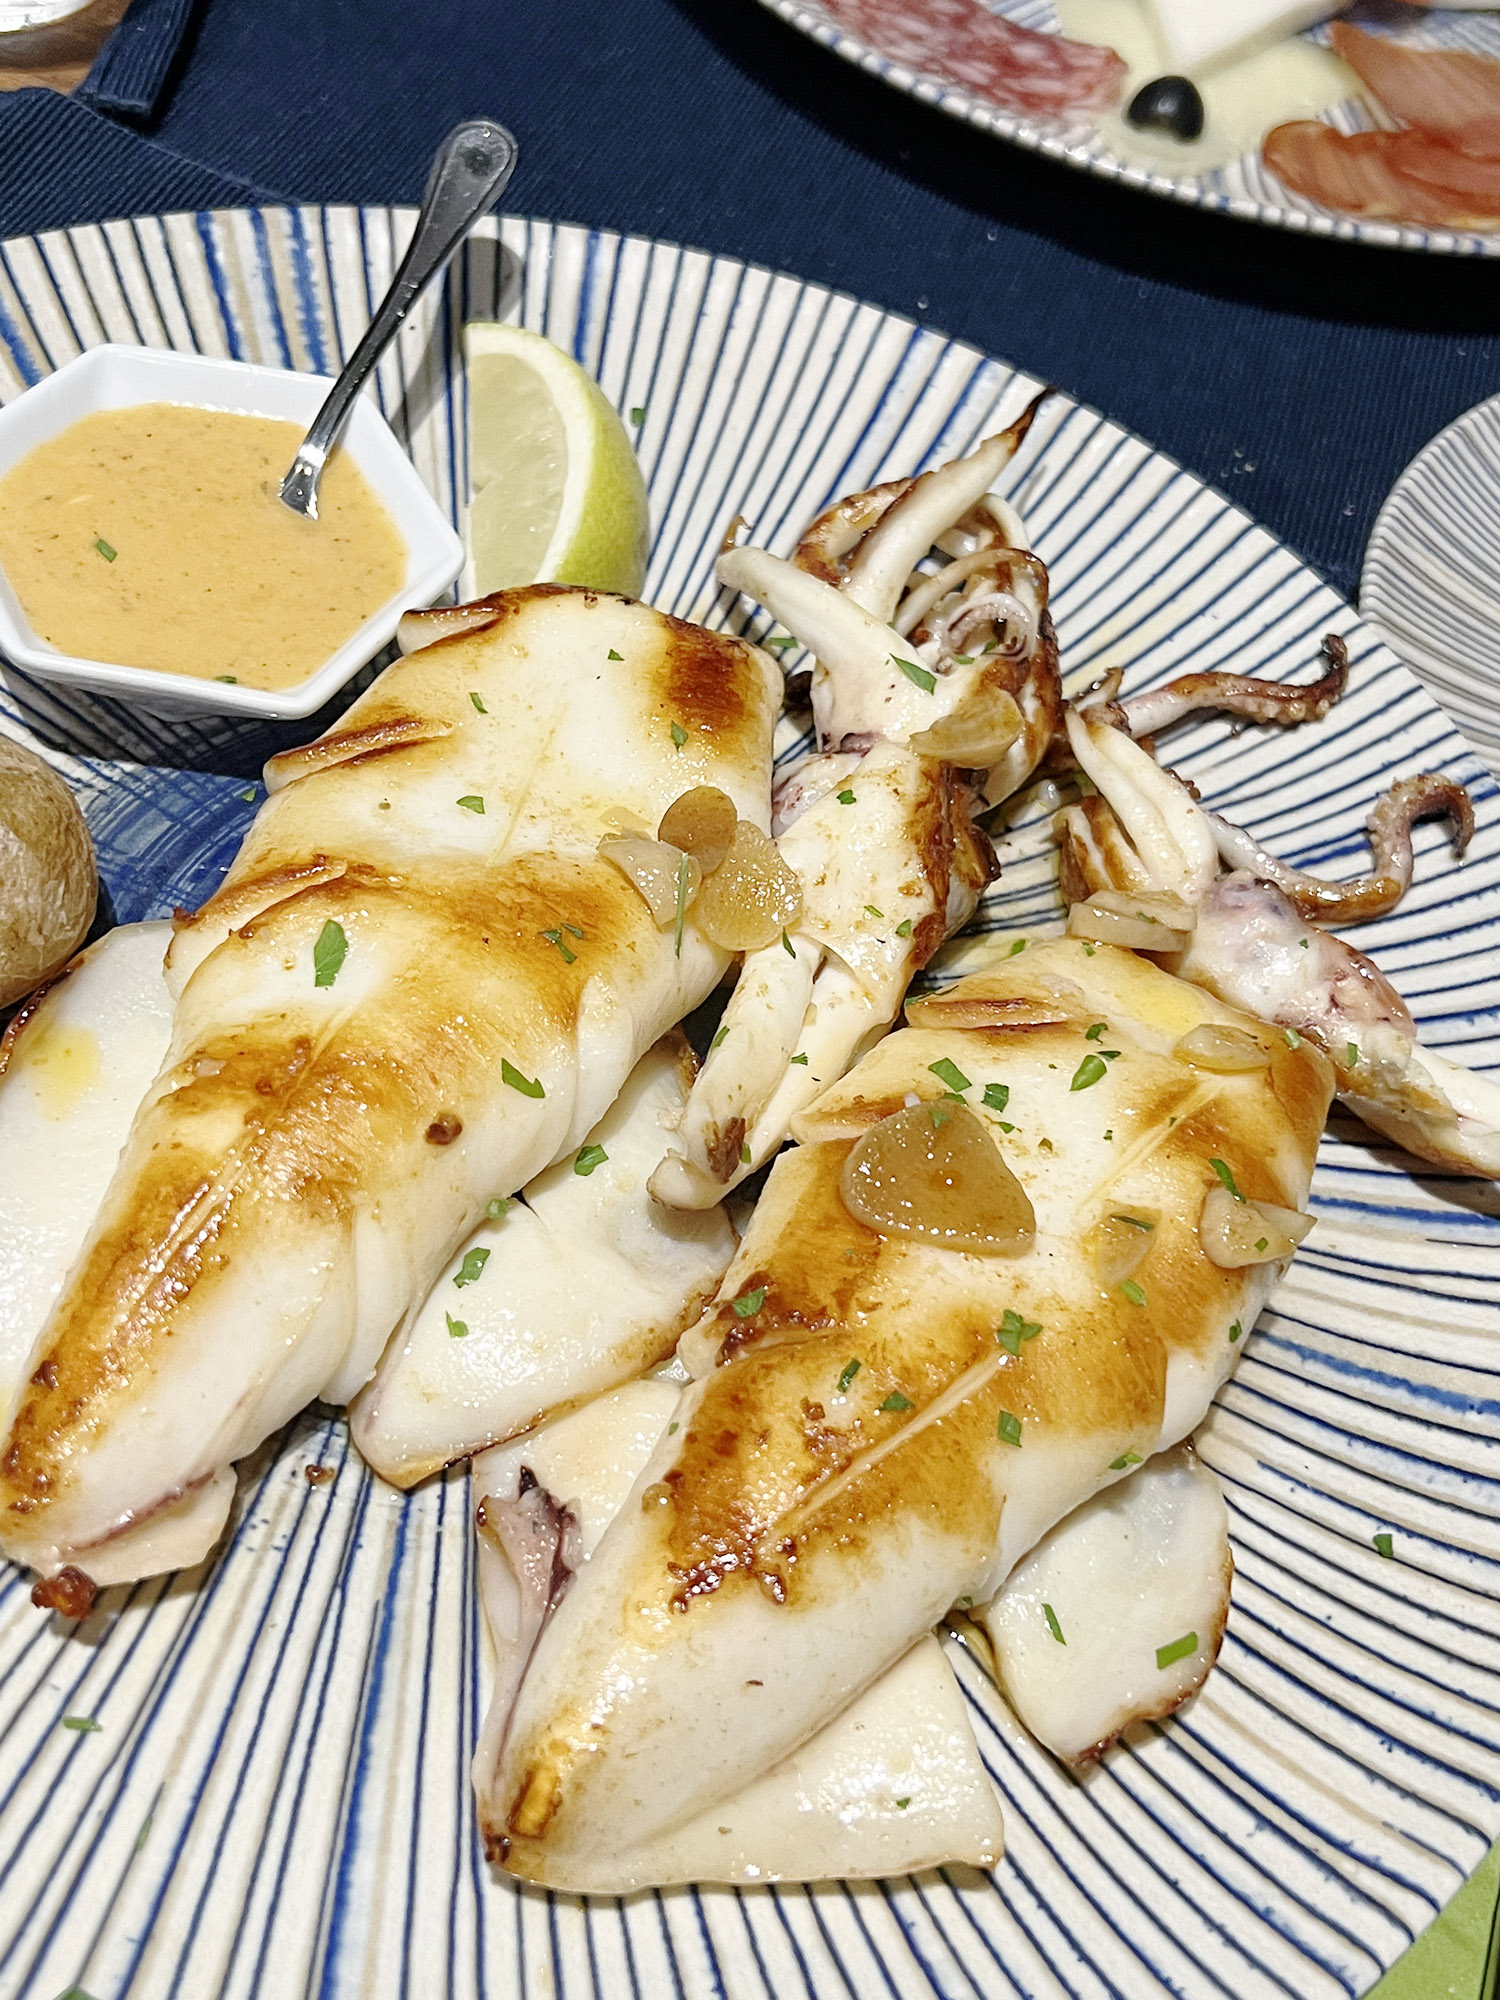 Grilled Squid, Fuerteventura: Al Fresco - Nice new restaurant in Costa Calma